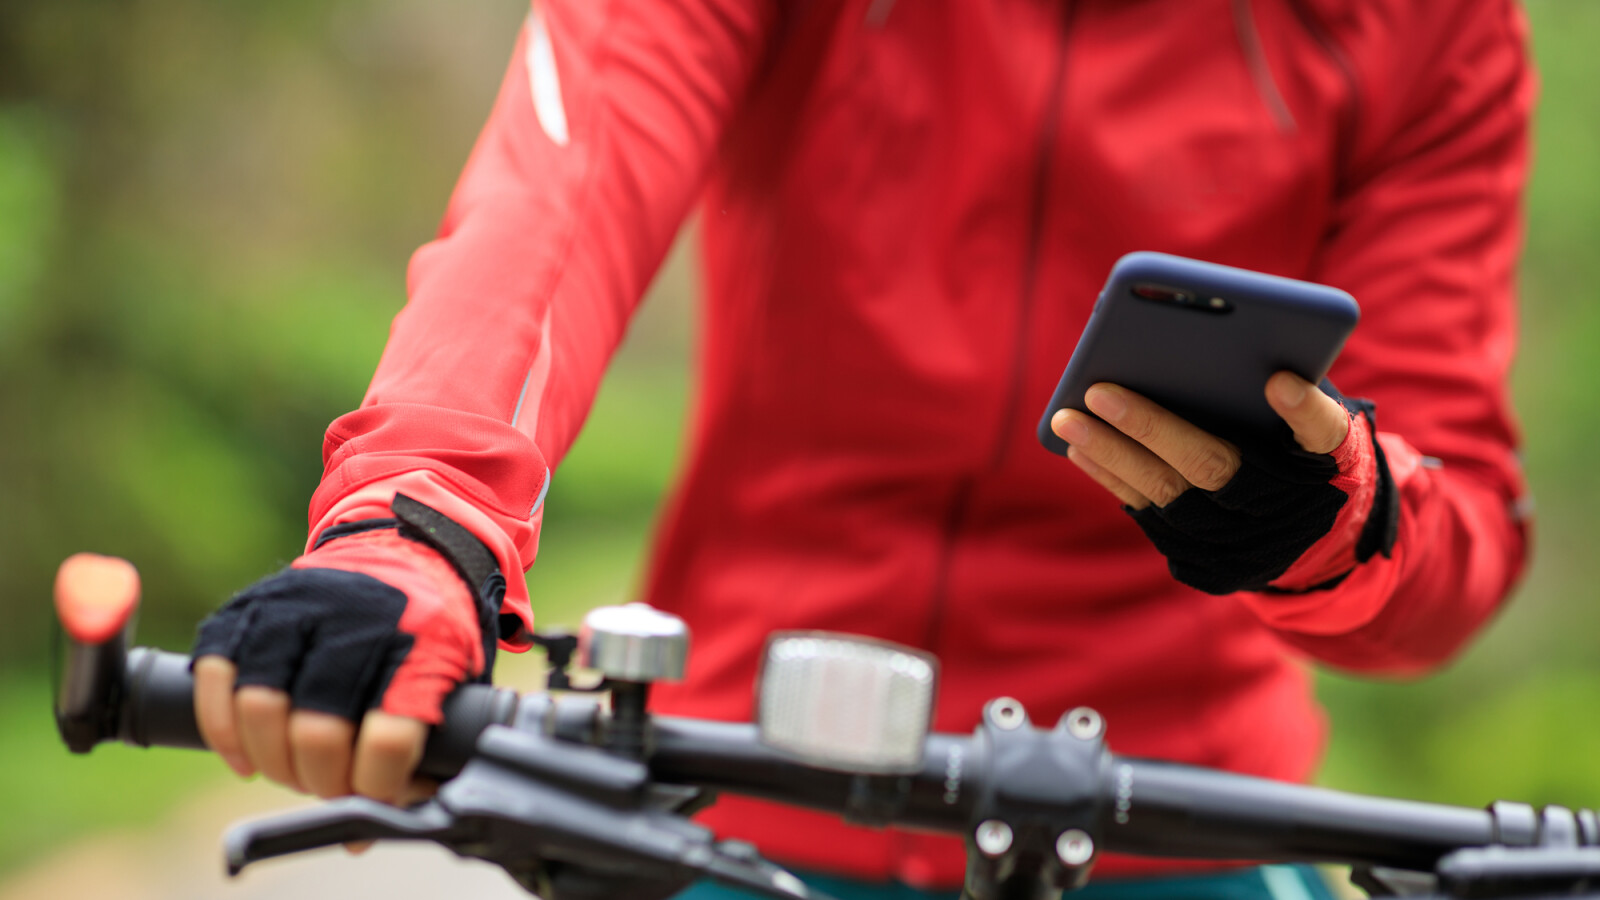 Handy am Fahrrad befestigen: Lenkerhalterungen im Vergleich